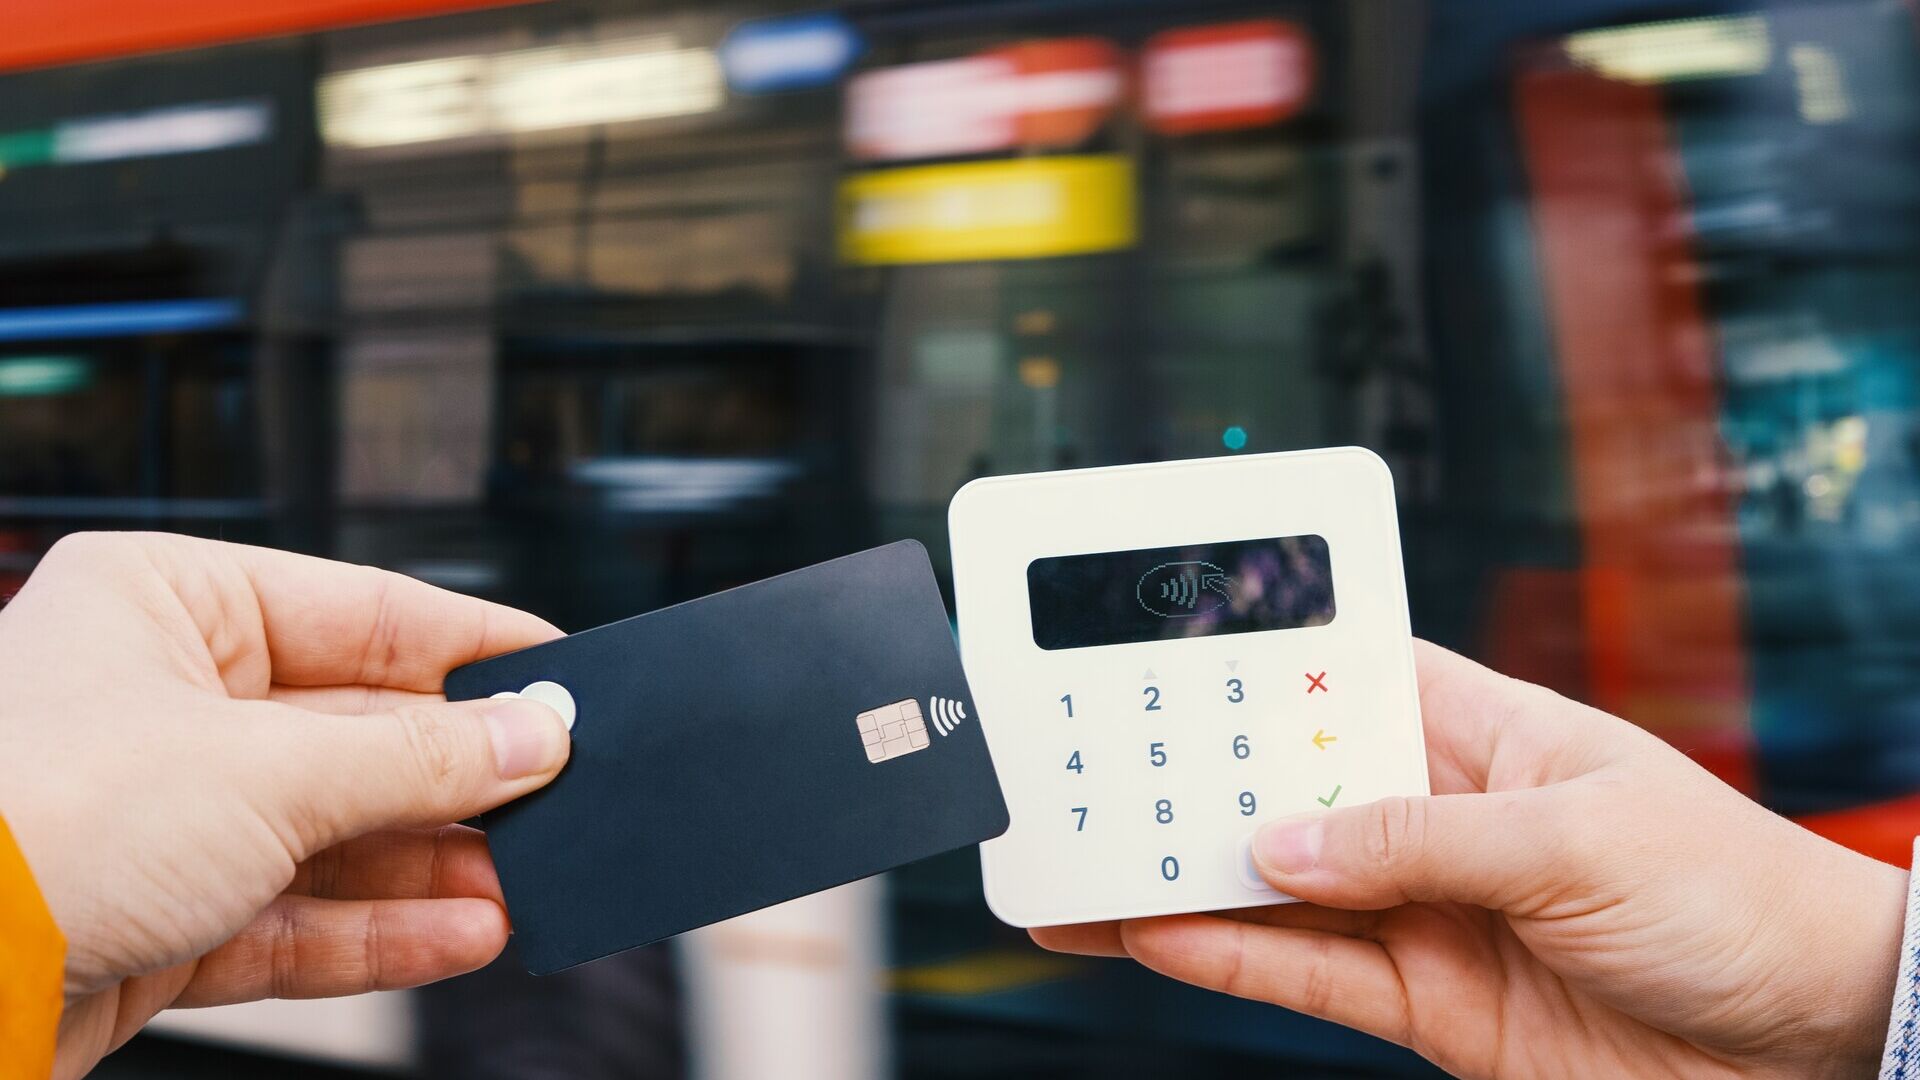 Mobiles Bezahlen: Kleine Unternehmen erlauben häufig Karten- oder digitale Zahlungen für große Beträge, da sonst höhere Transaktionskosten anfallen würden